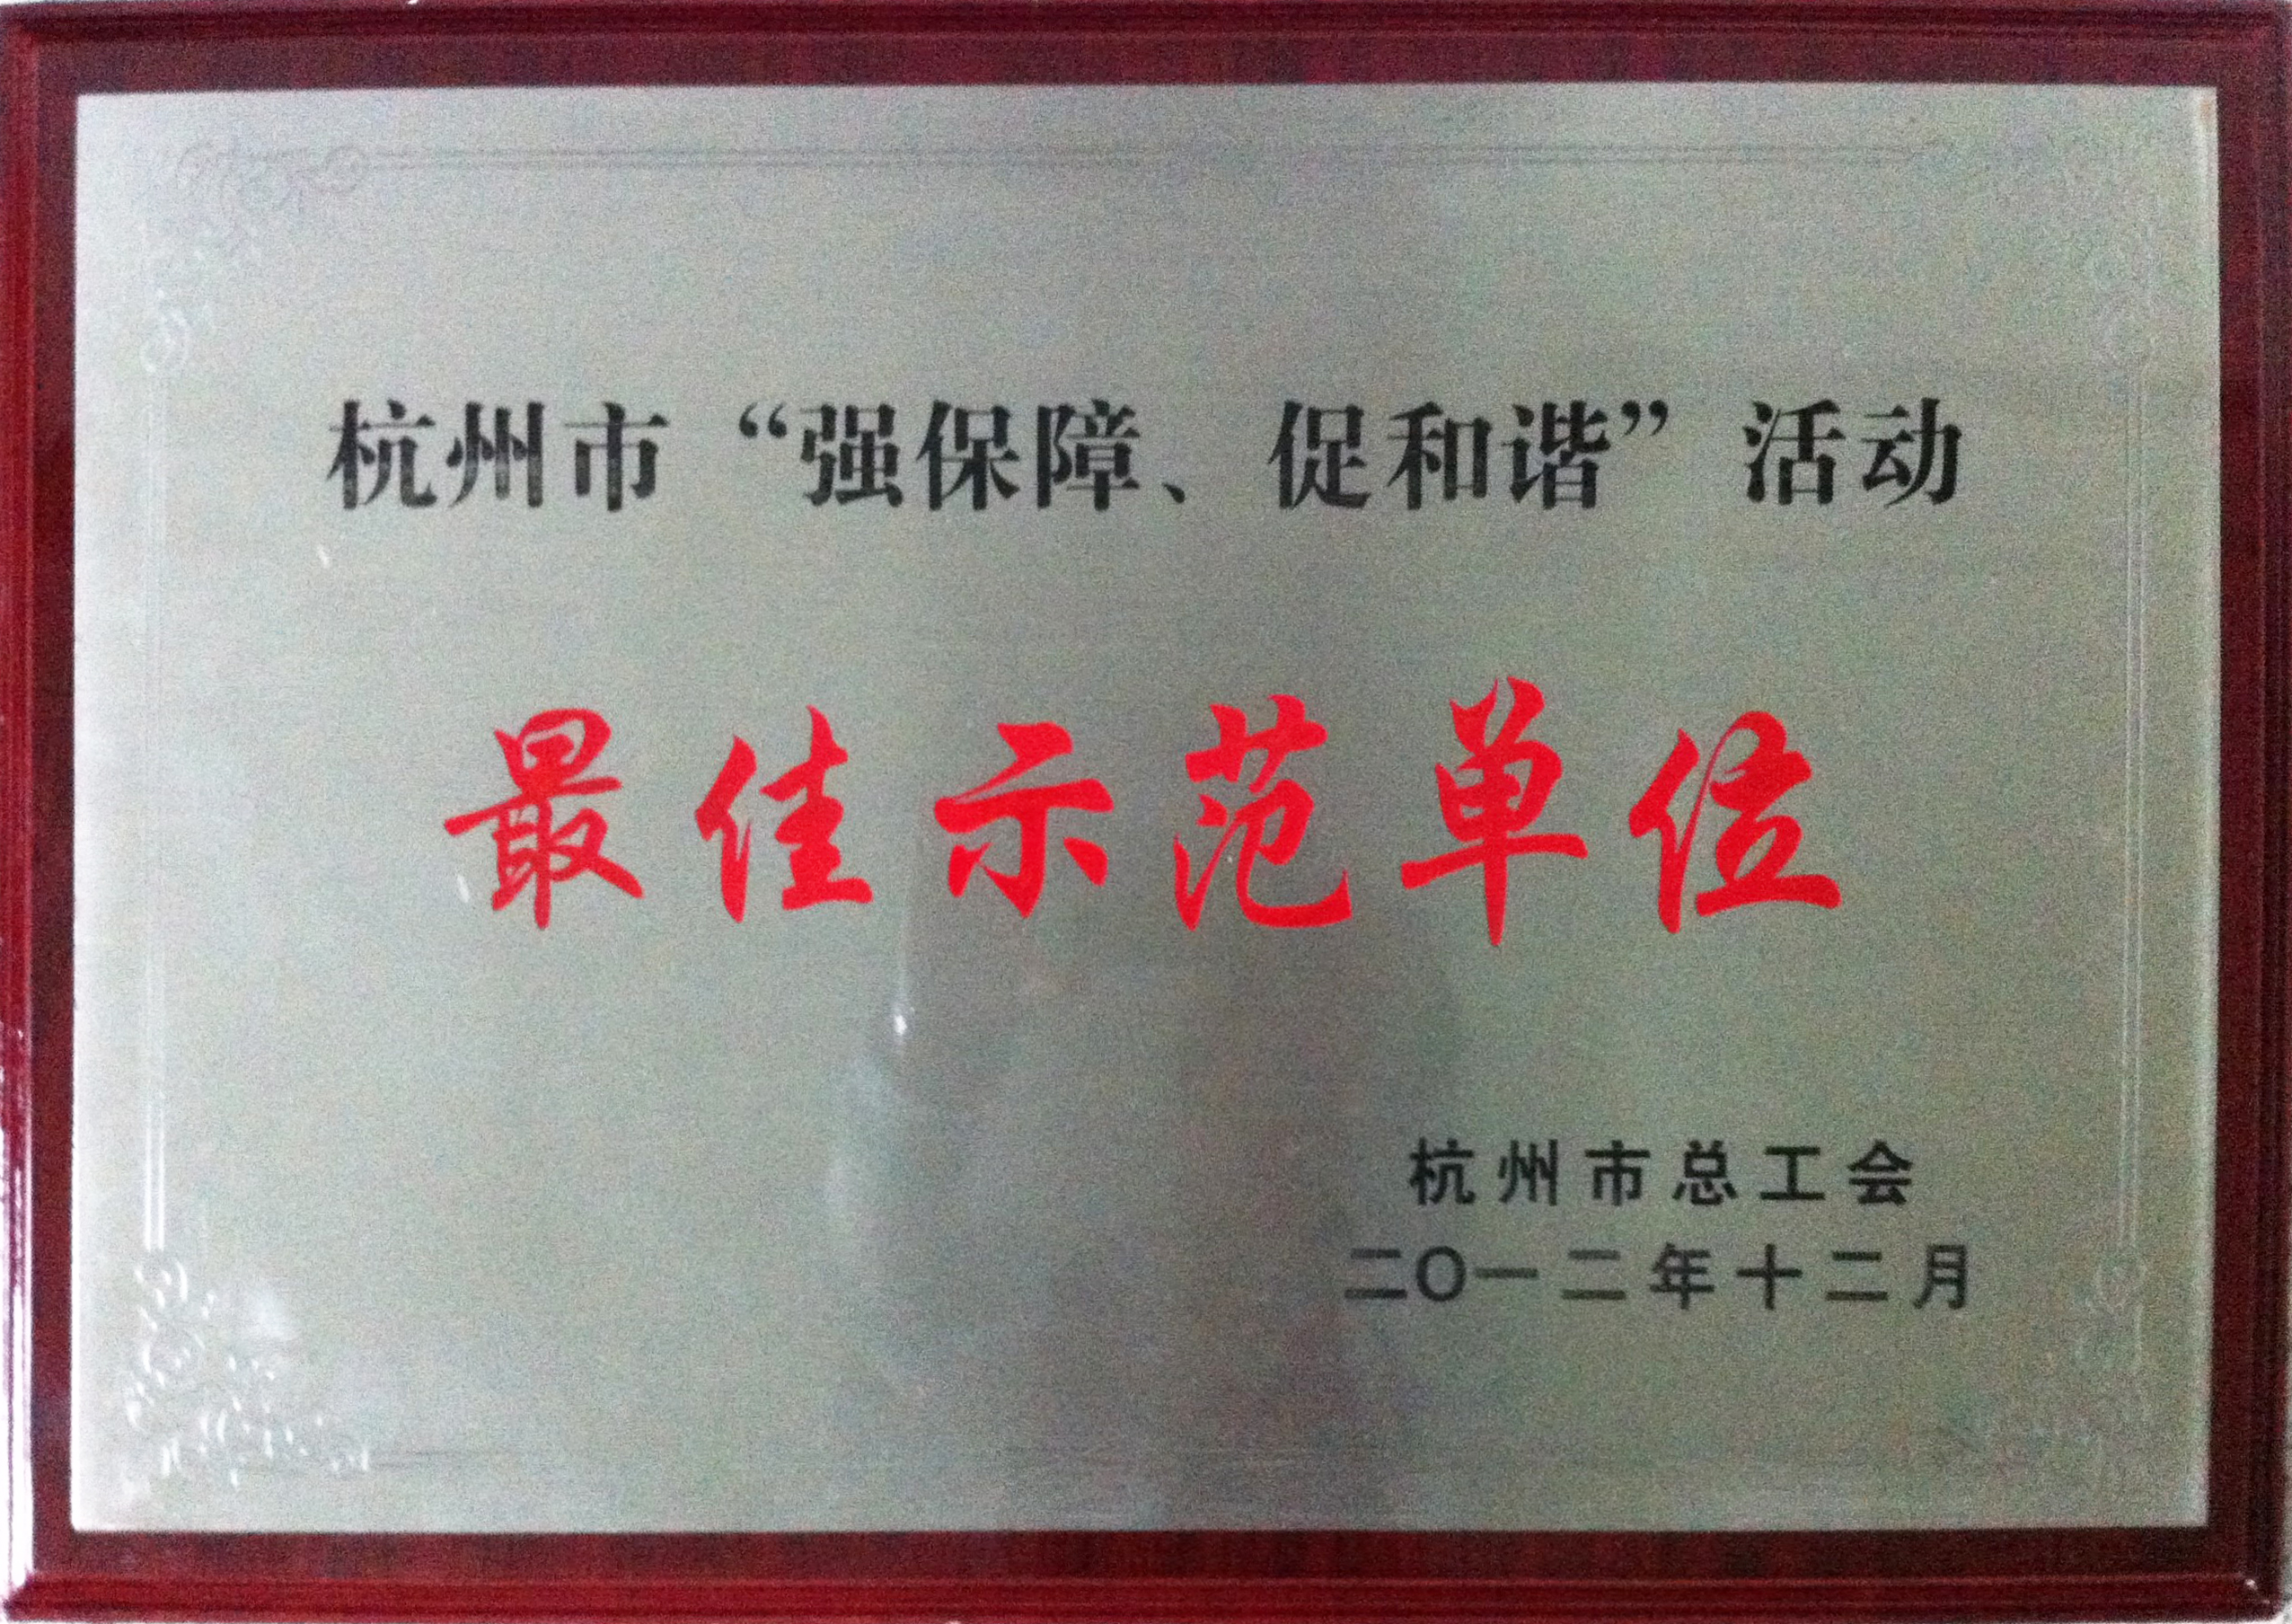 18.杭州市强保障促和谐活动最佳示范单位